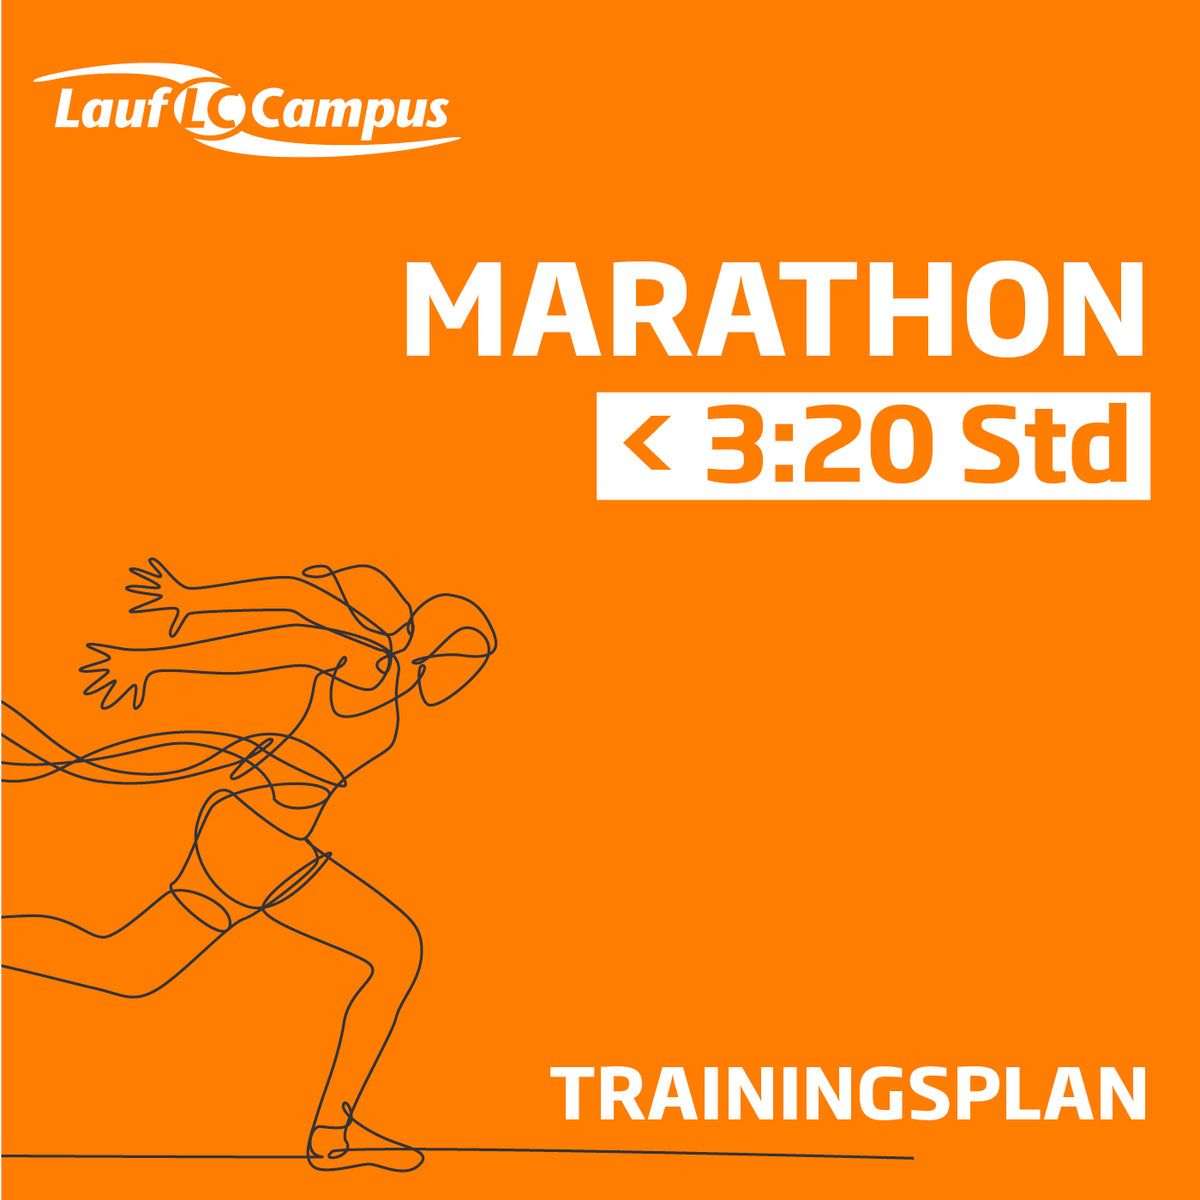 Trainingsplan für Marathon unter 3:20 Stunden